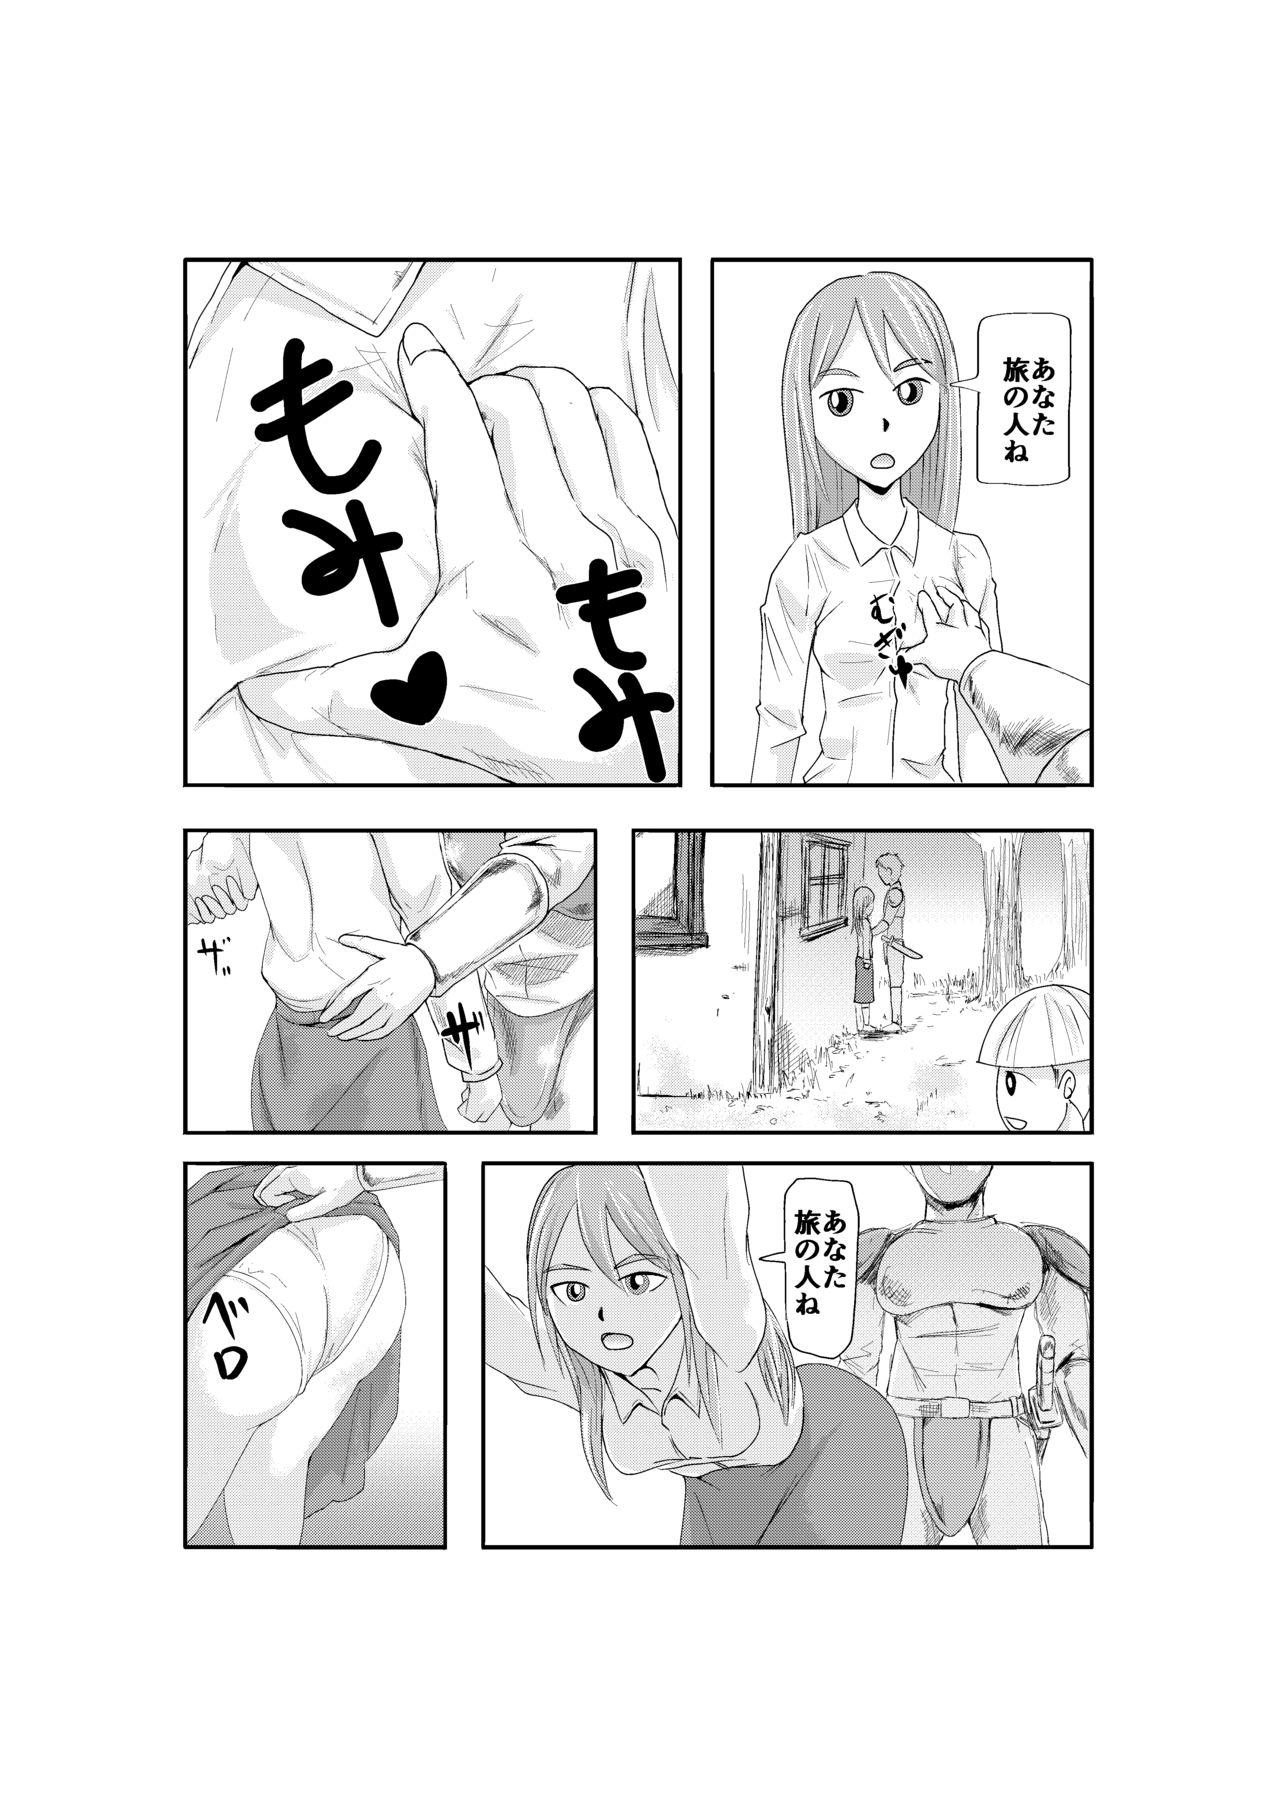 Uncensored NPC姦 (NPC Fucking) by Barusuki - Original Deutsche - Page 6